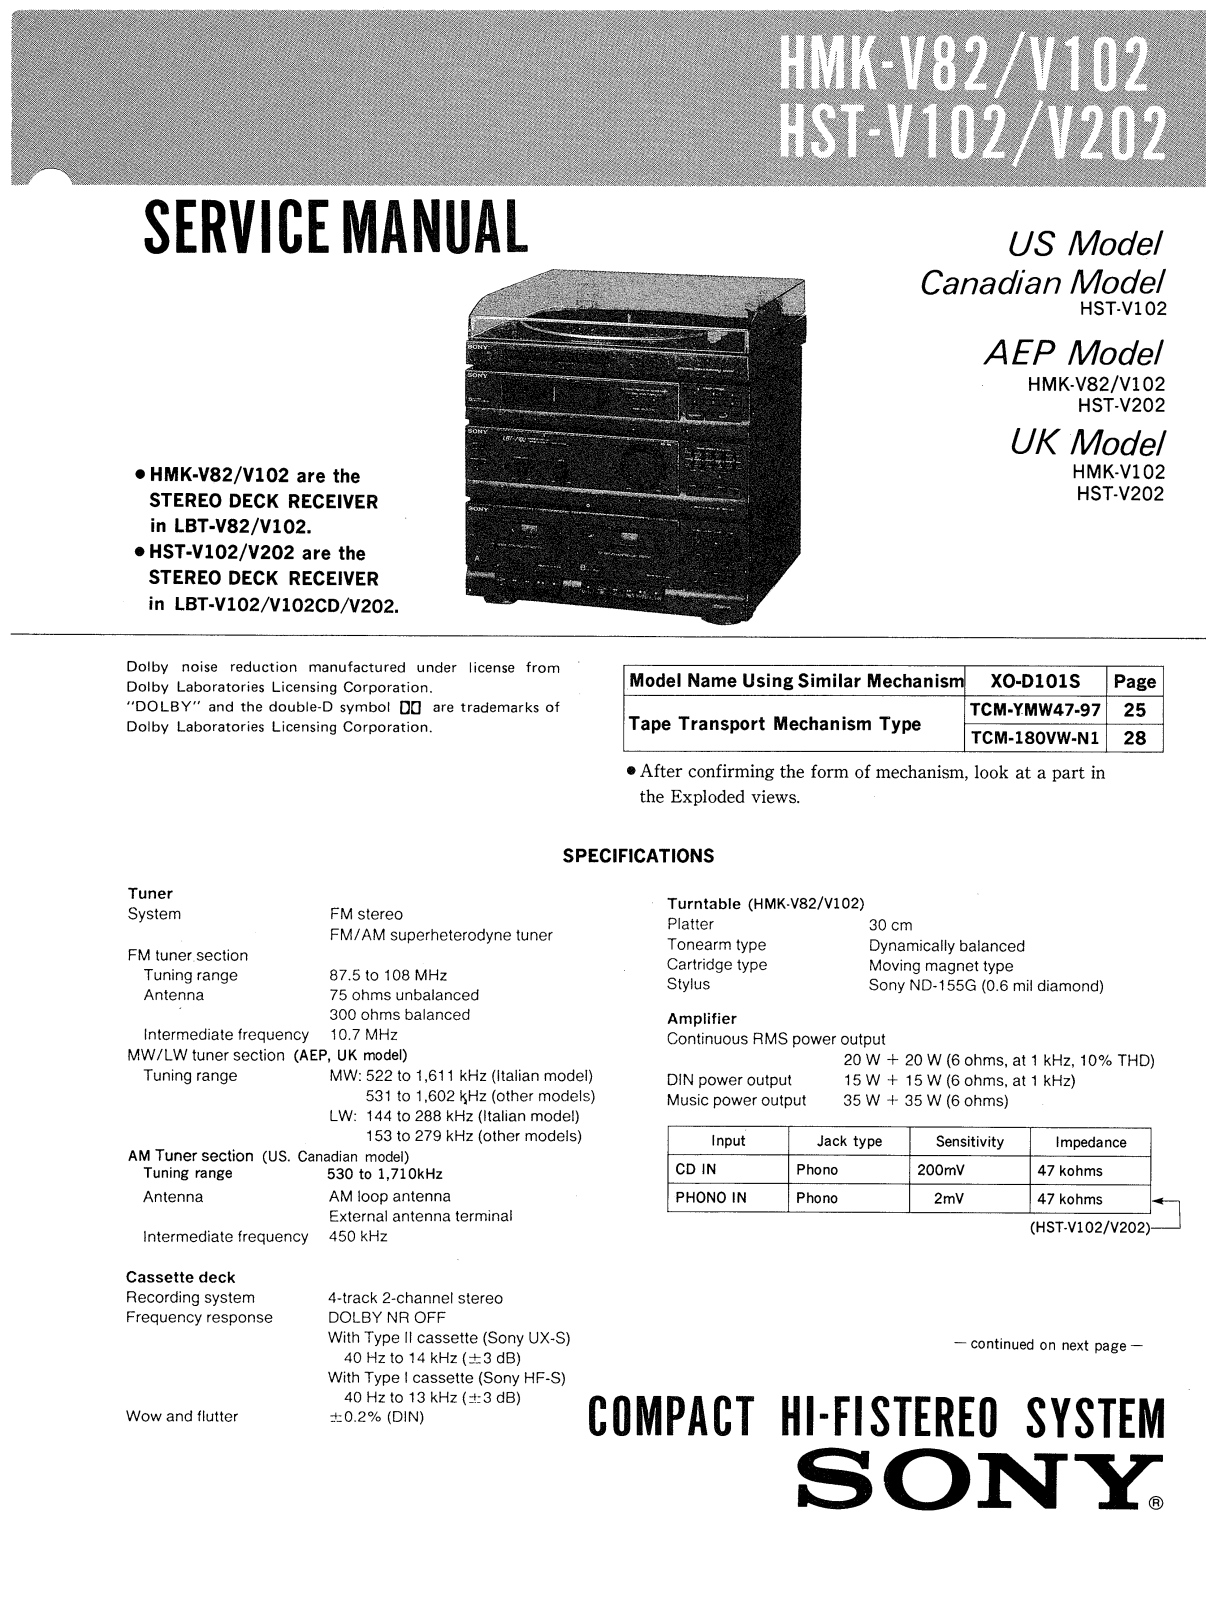 Sony HMKV-82 Service manual